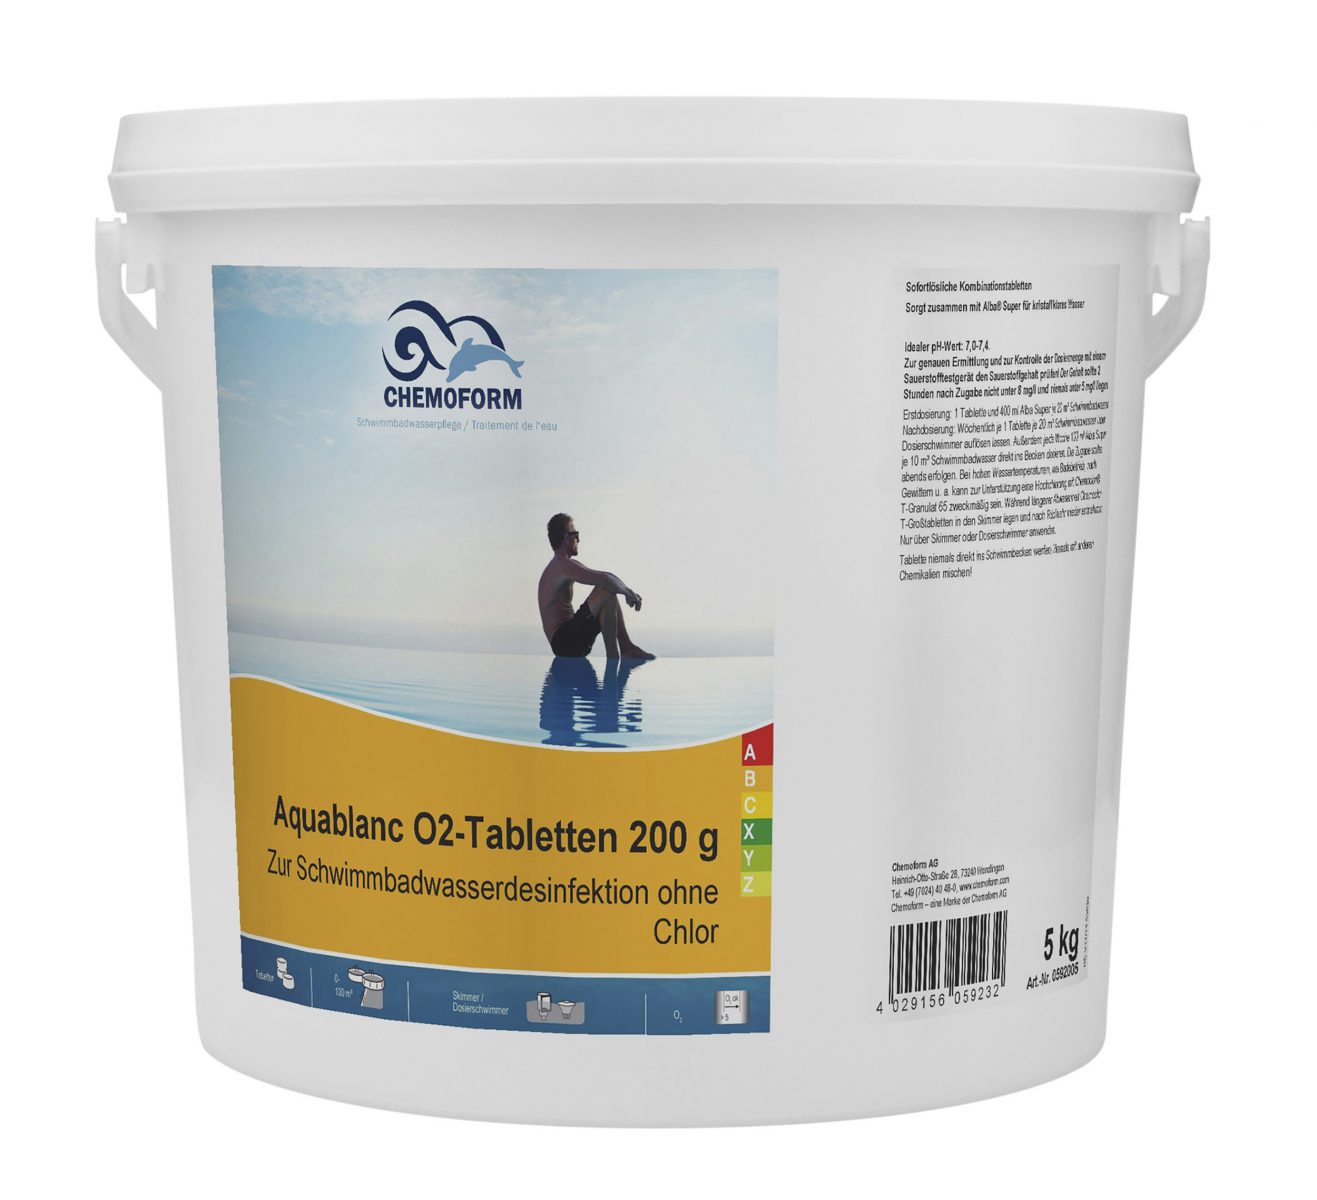 Активный кислород в таблетках для дезинфекции воды в бассейнах Аквабланк О2 (200 г), 10 кг